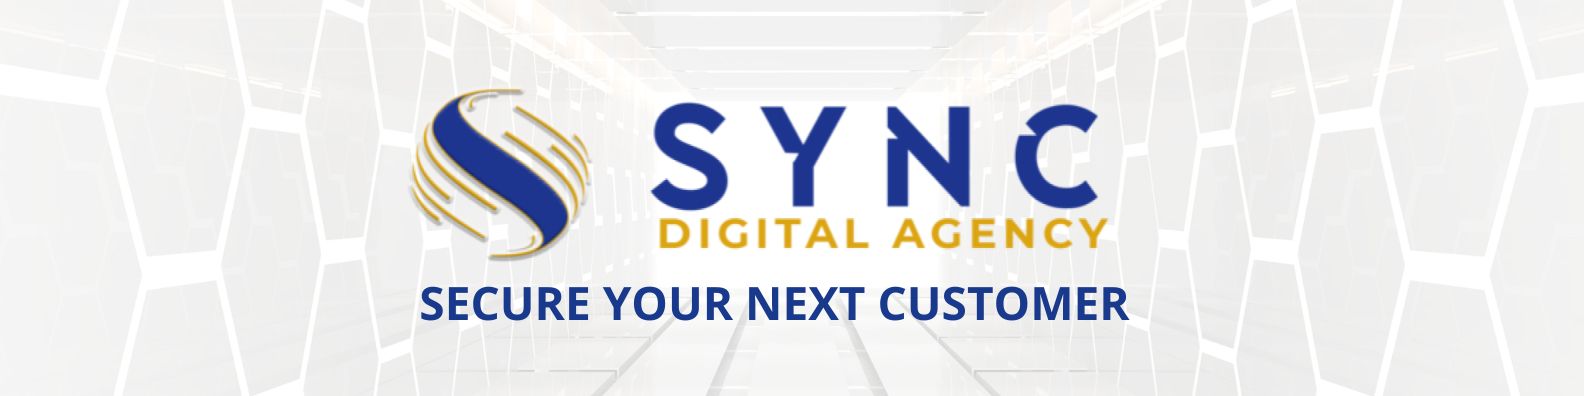 SYNC Digital Agency